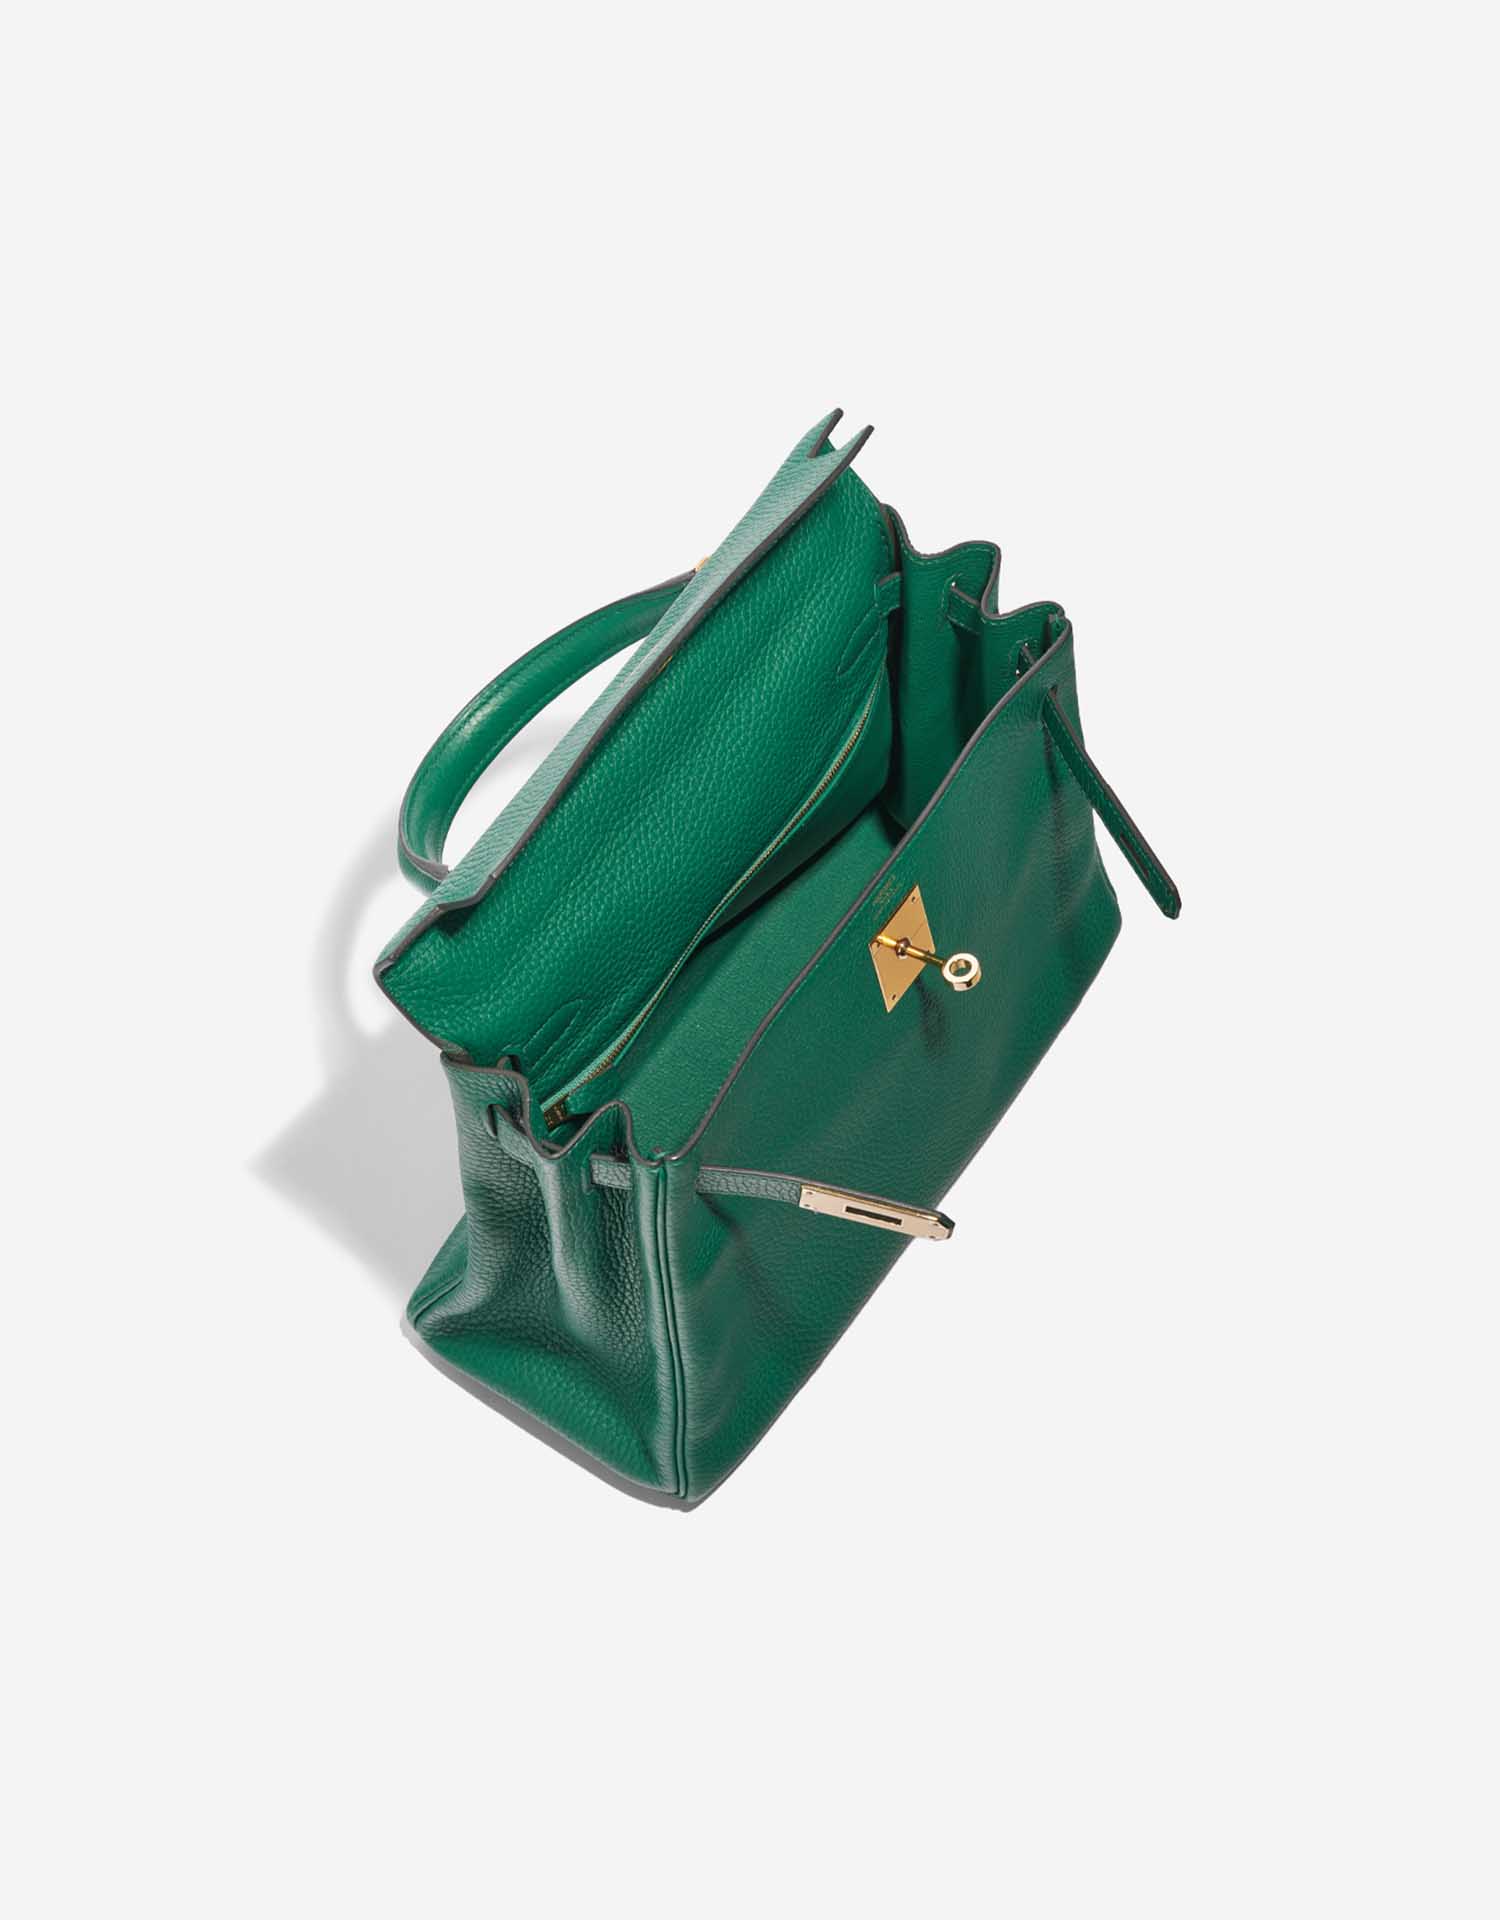 Pre-owned Hermès Tasche Kelly 28 Togo Vert Menthe Green Inside | Verkaufen Sie Ihre Designer-Tasche auf Saclab.com